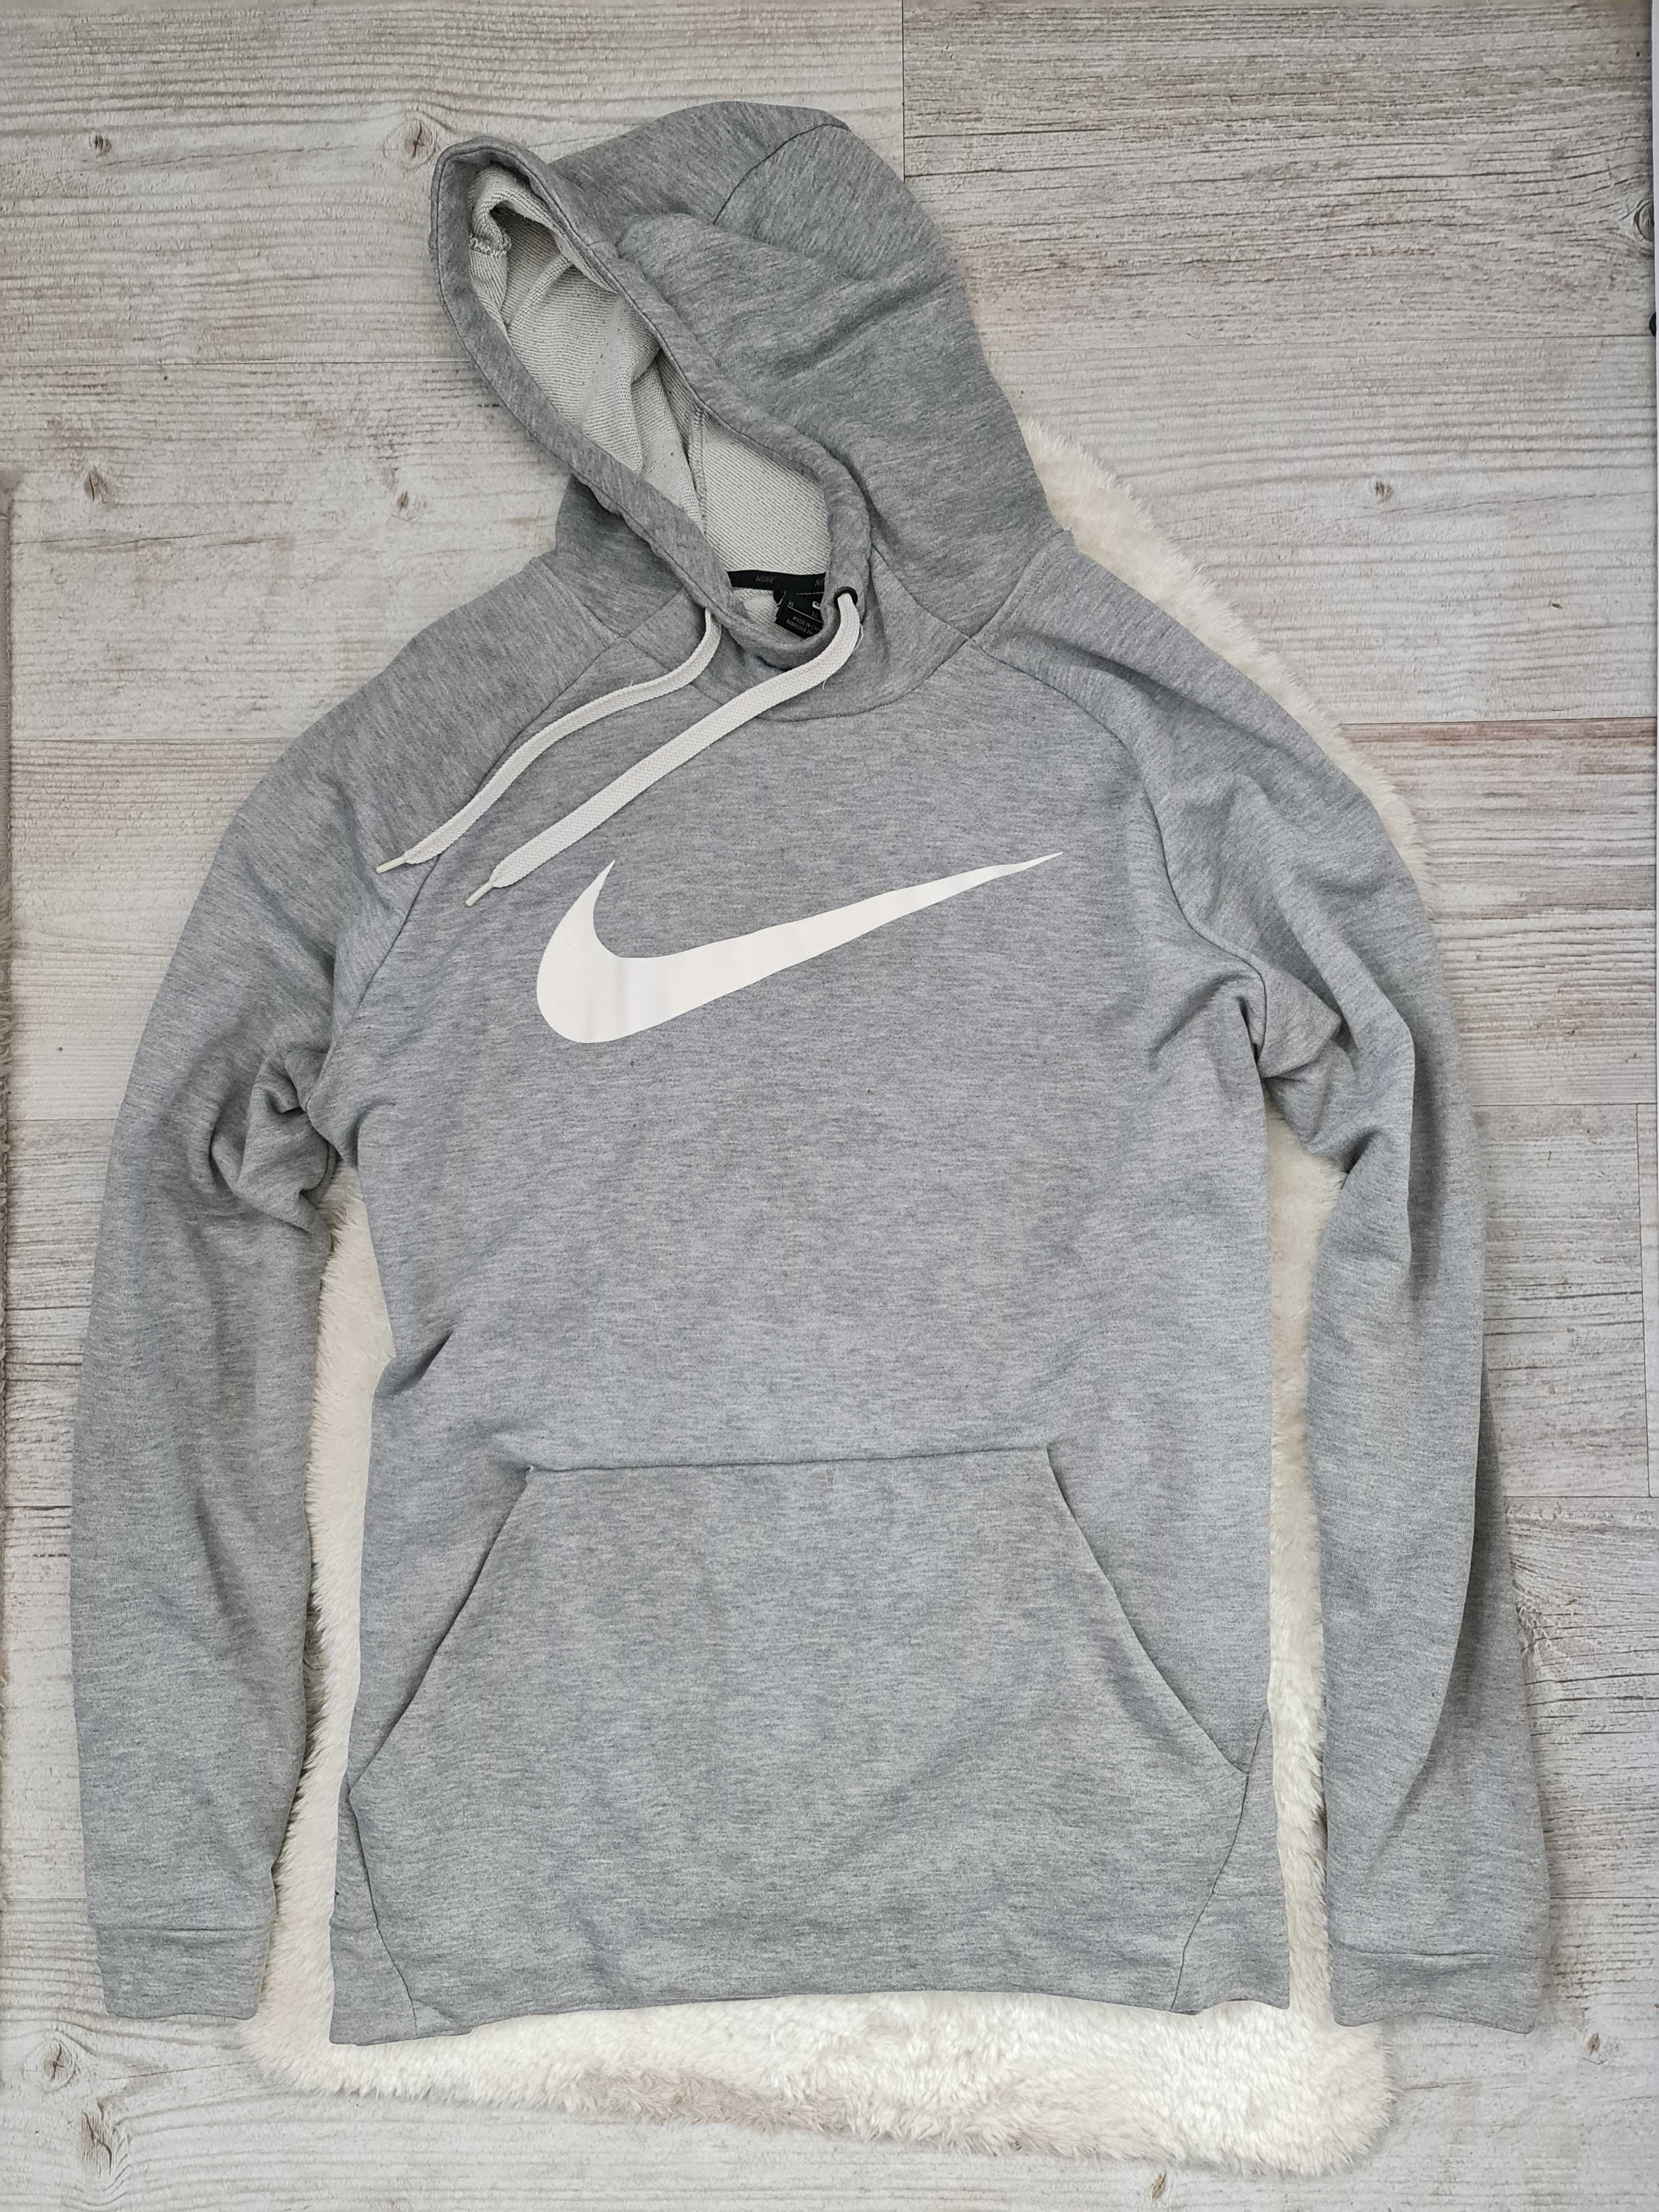 Bluza z kapturem Nike Swoosh Rozmiar XL Szara Oryginalna Logo